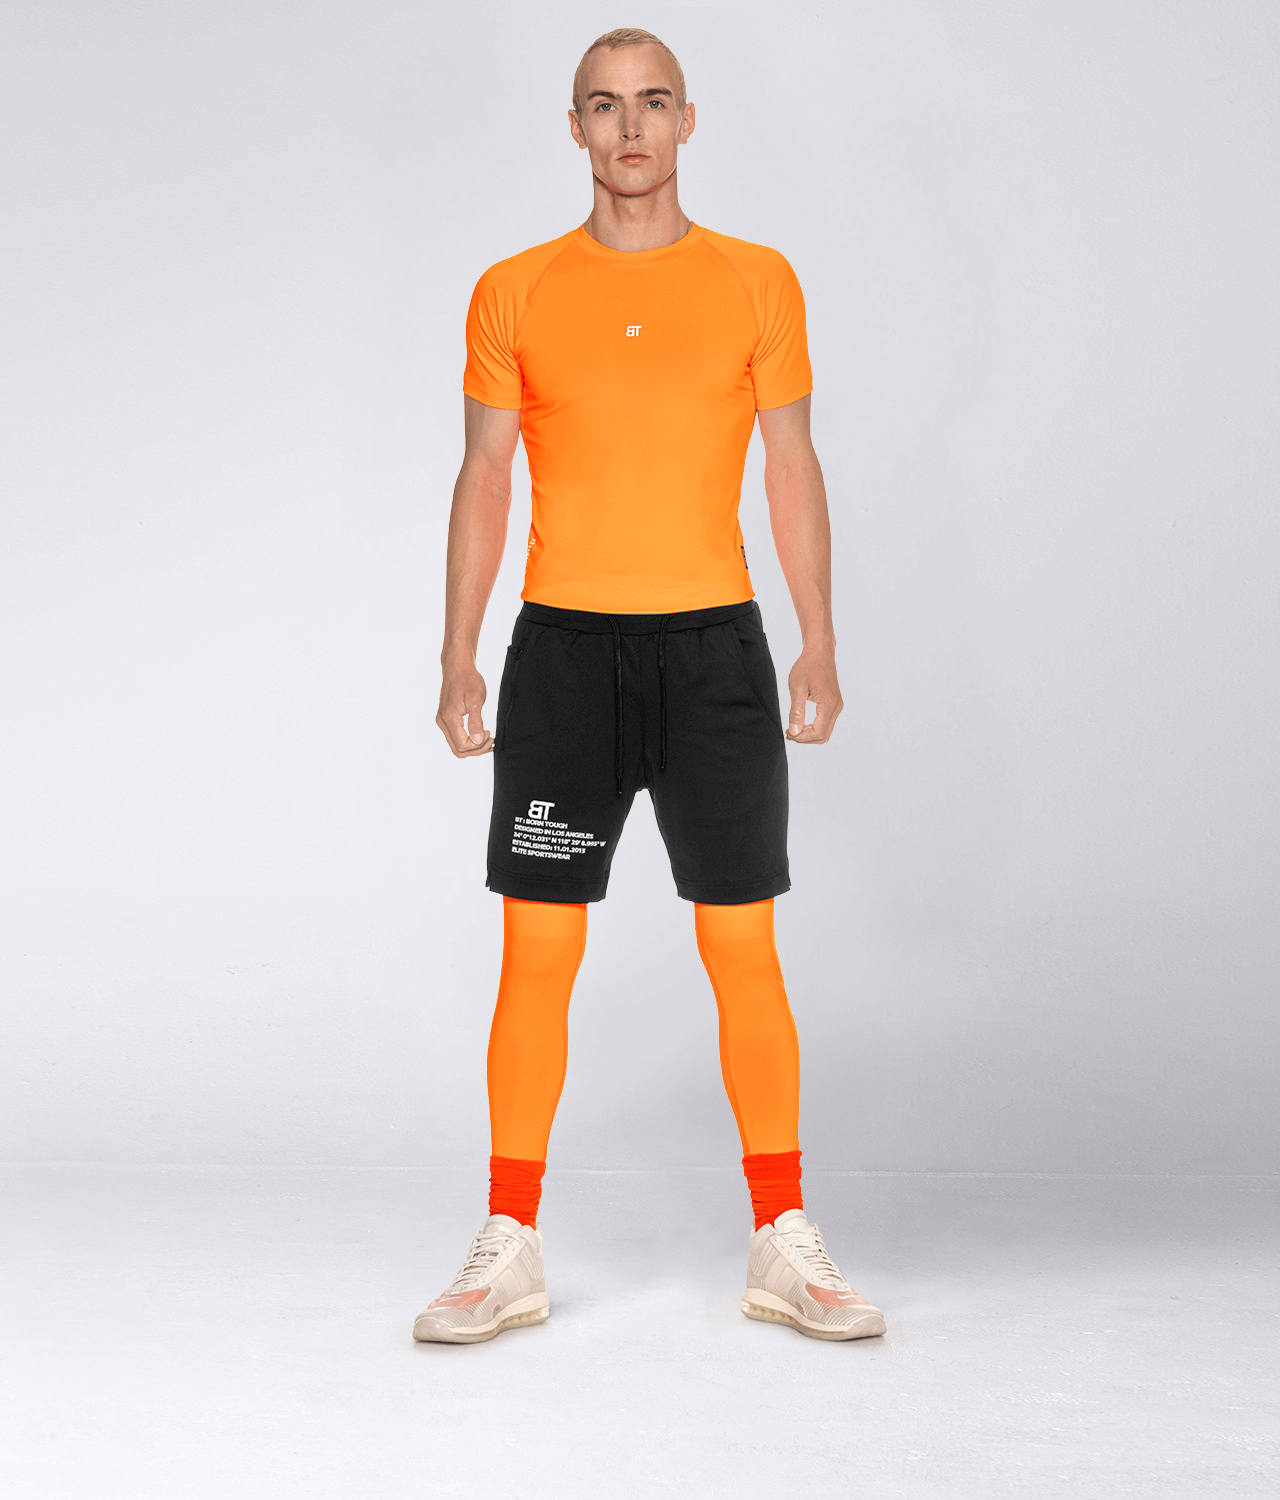 Born Tough Side Pockets Compression Orange Running Legging Pants For Men -  Elite Sports – Elite Sports